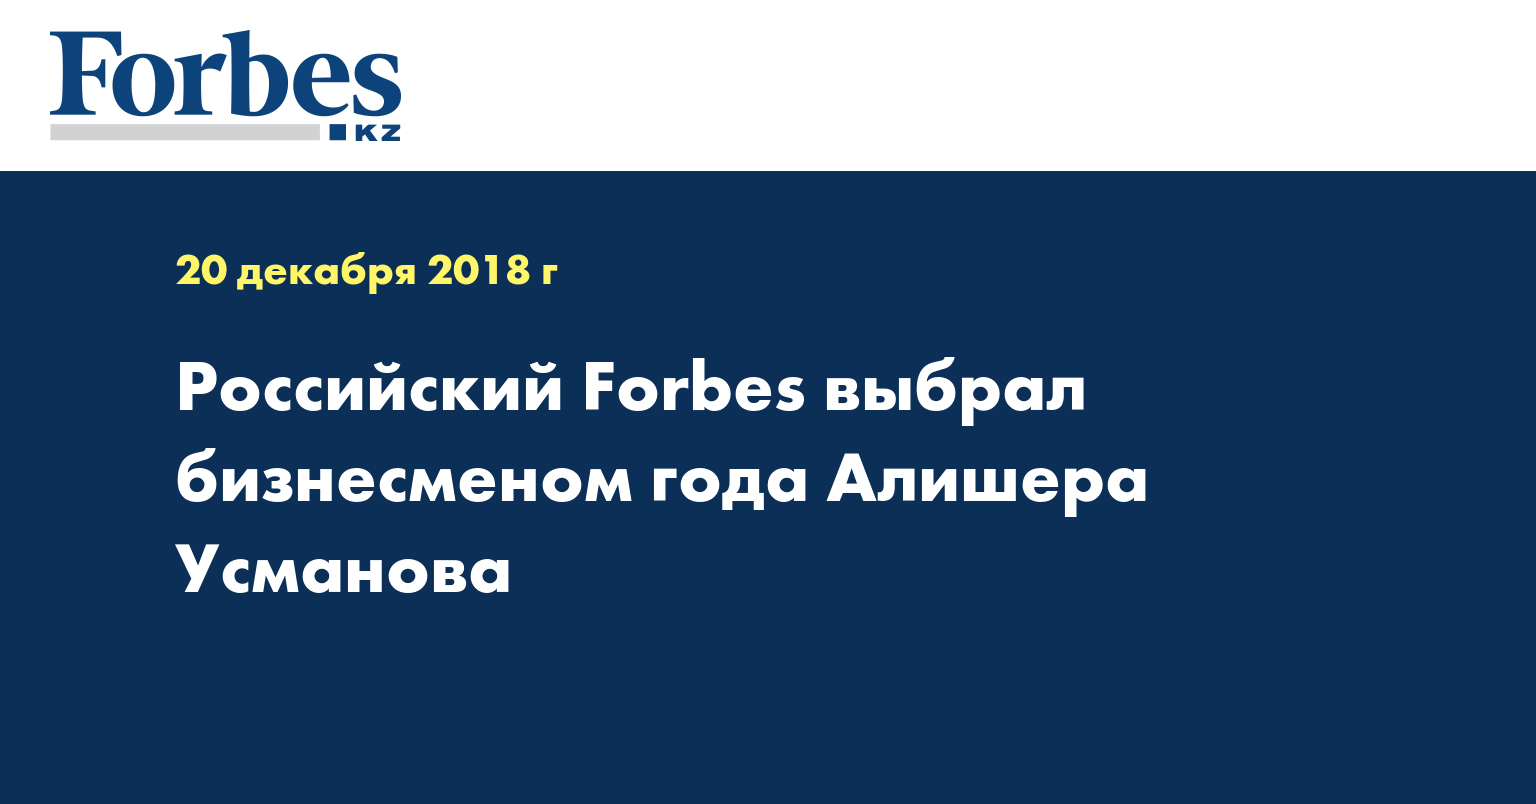 Российский Forbes выбрал бизнесменом года Алишера Усманова